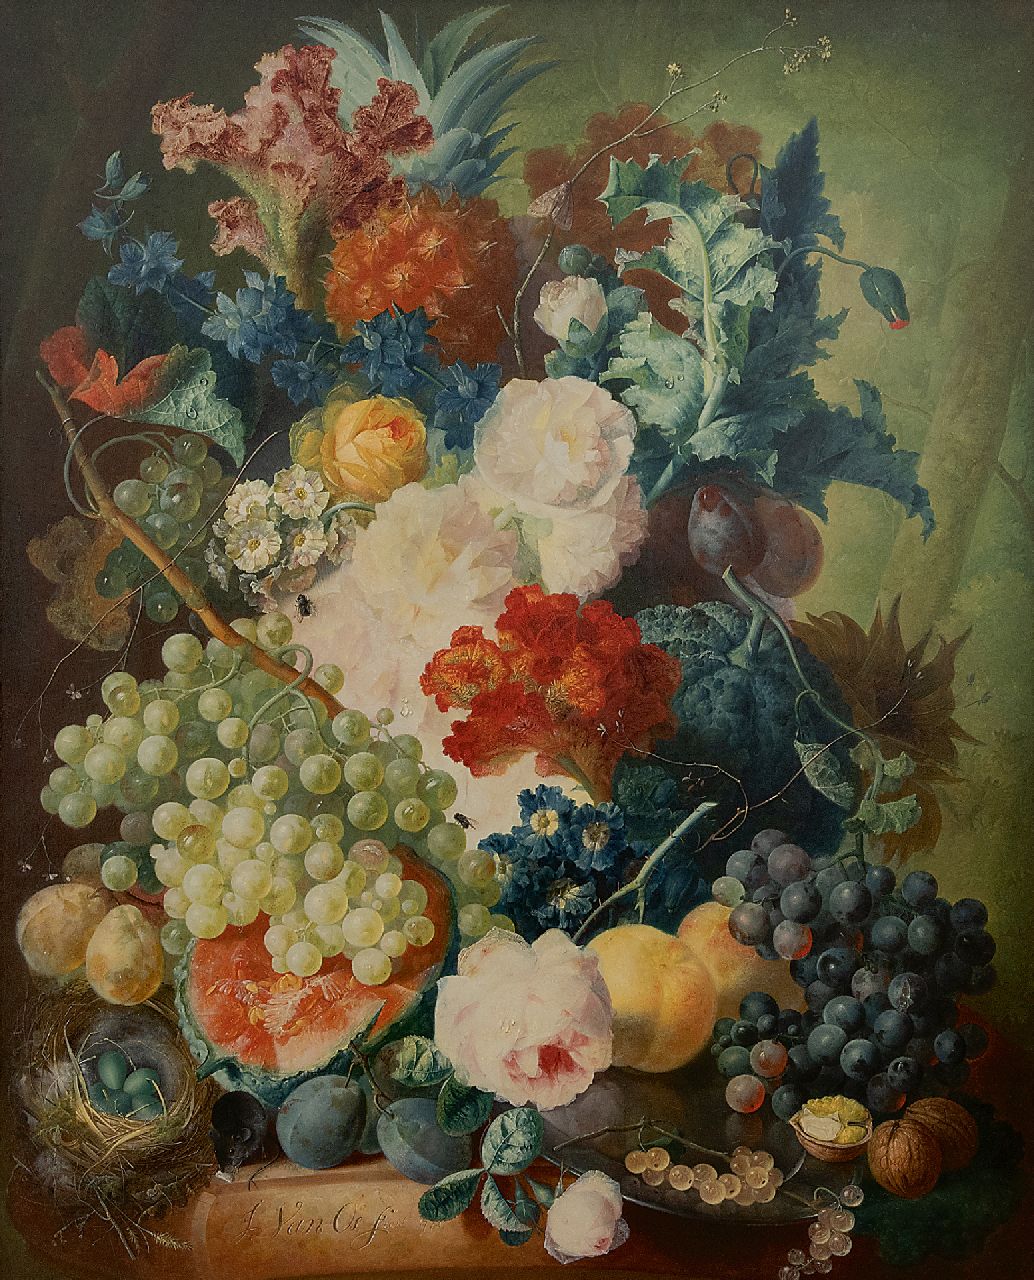 Os J. van | Jan van Os | Schilderijen te koop aangeboden | Bloemstilleven met fruit, een muis en vogelnest, olieverf op paneel 69,7 x 55,1 cm, gesigneerd linksonder en gedateerd 1774